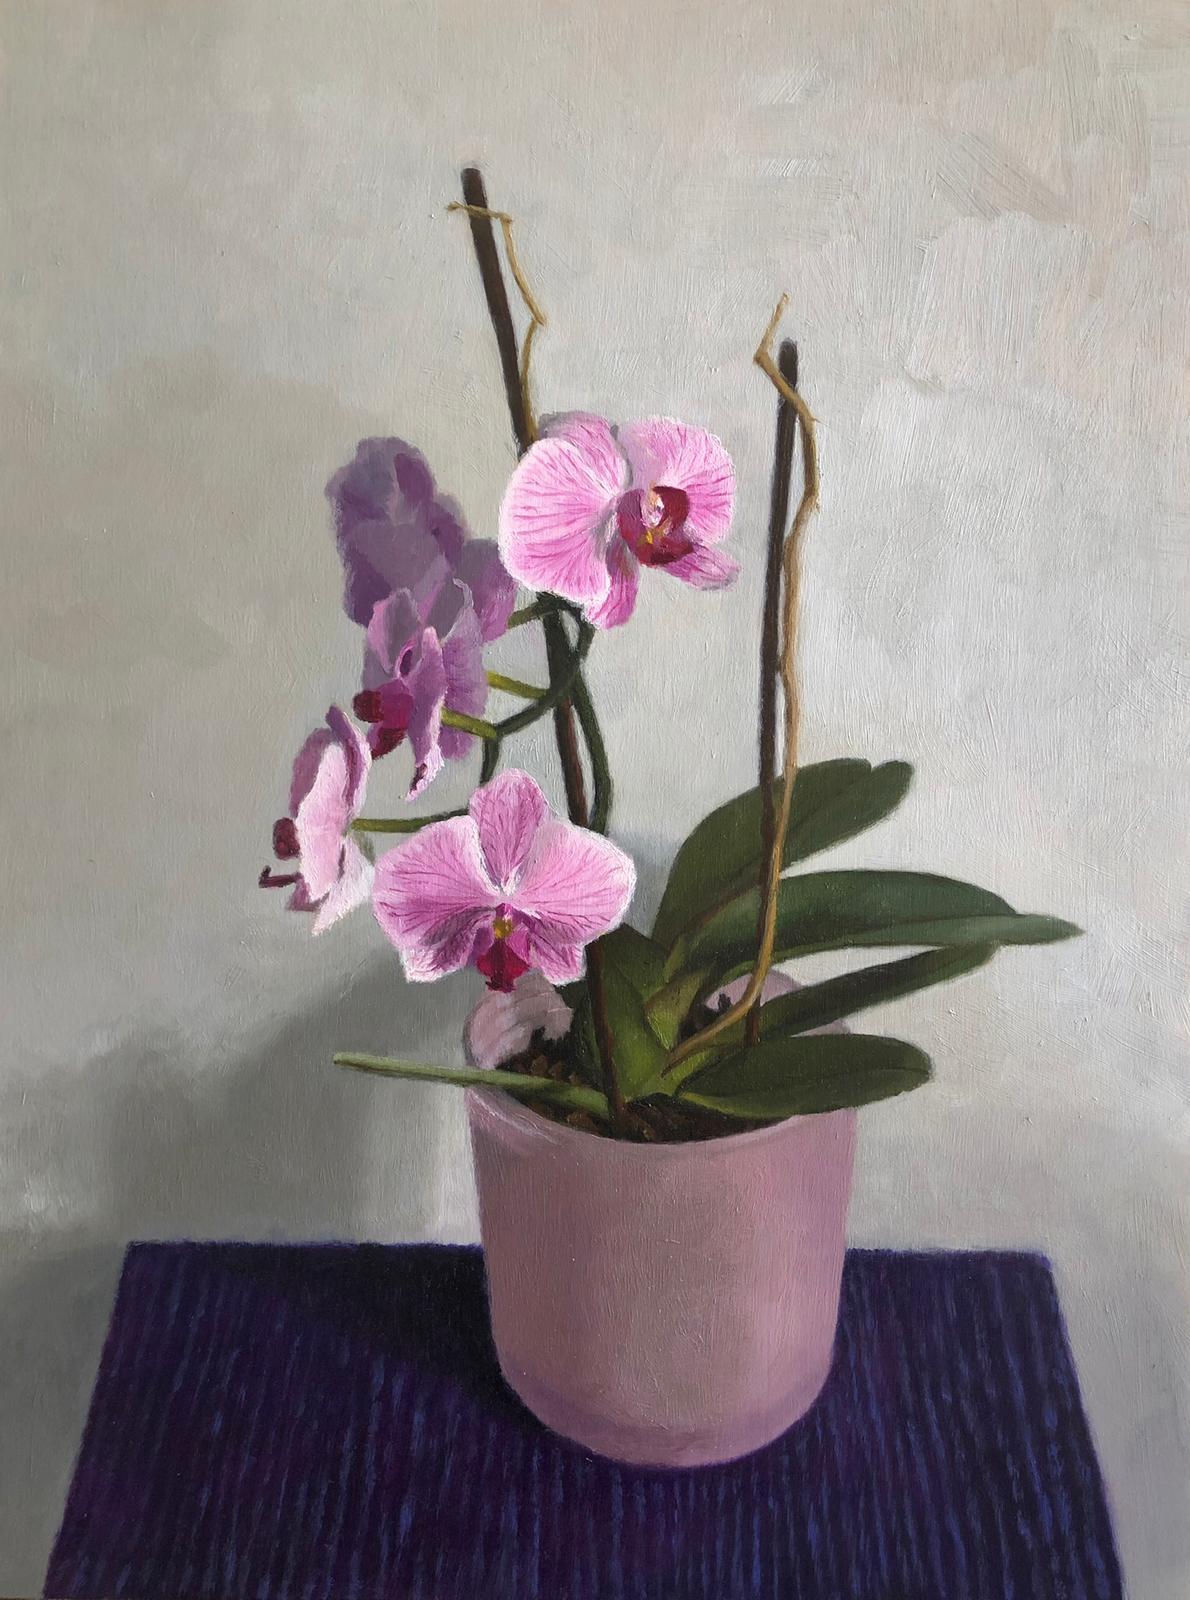 Chani Cohen Zada
Orchideen
öl auf Platte  
40 x 30 cm
16 x 12 Zoll

"Eines der Haupthindernisse, auf das ein Anfänger stößt, wenn er aus der Beobachtung heraus malen will, ist ein konzeptioneller Konflikt. Das liegt daran, dass alles aus zwei Dingen